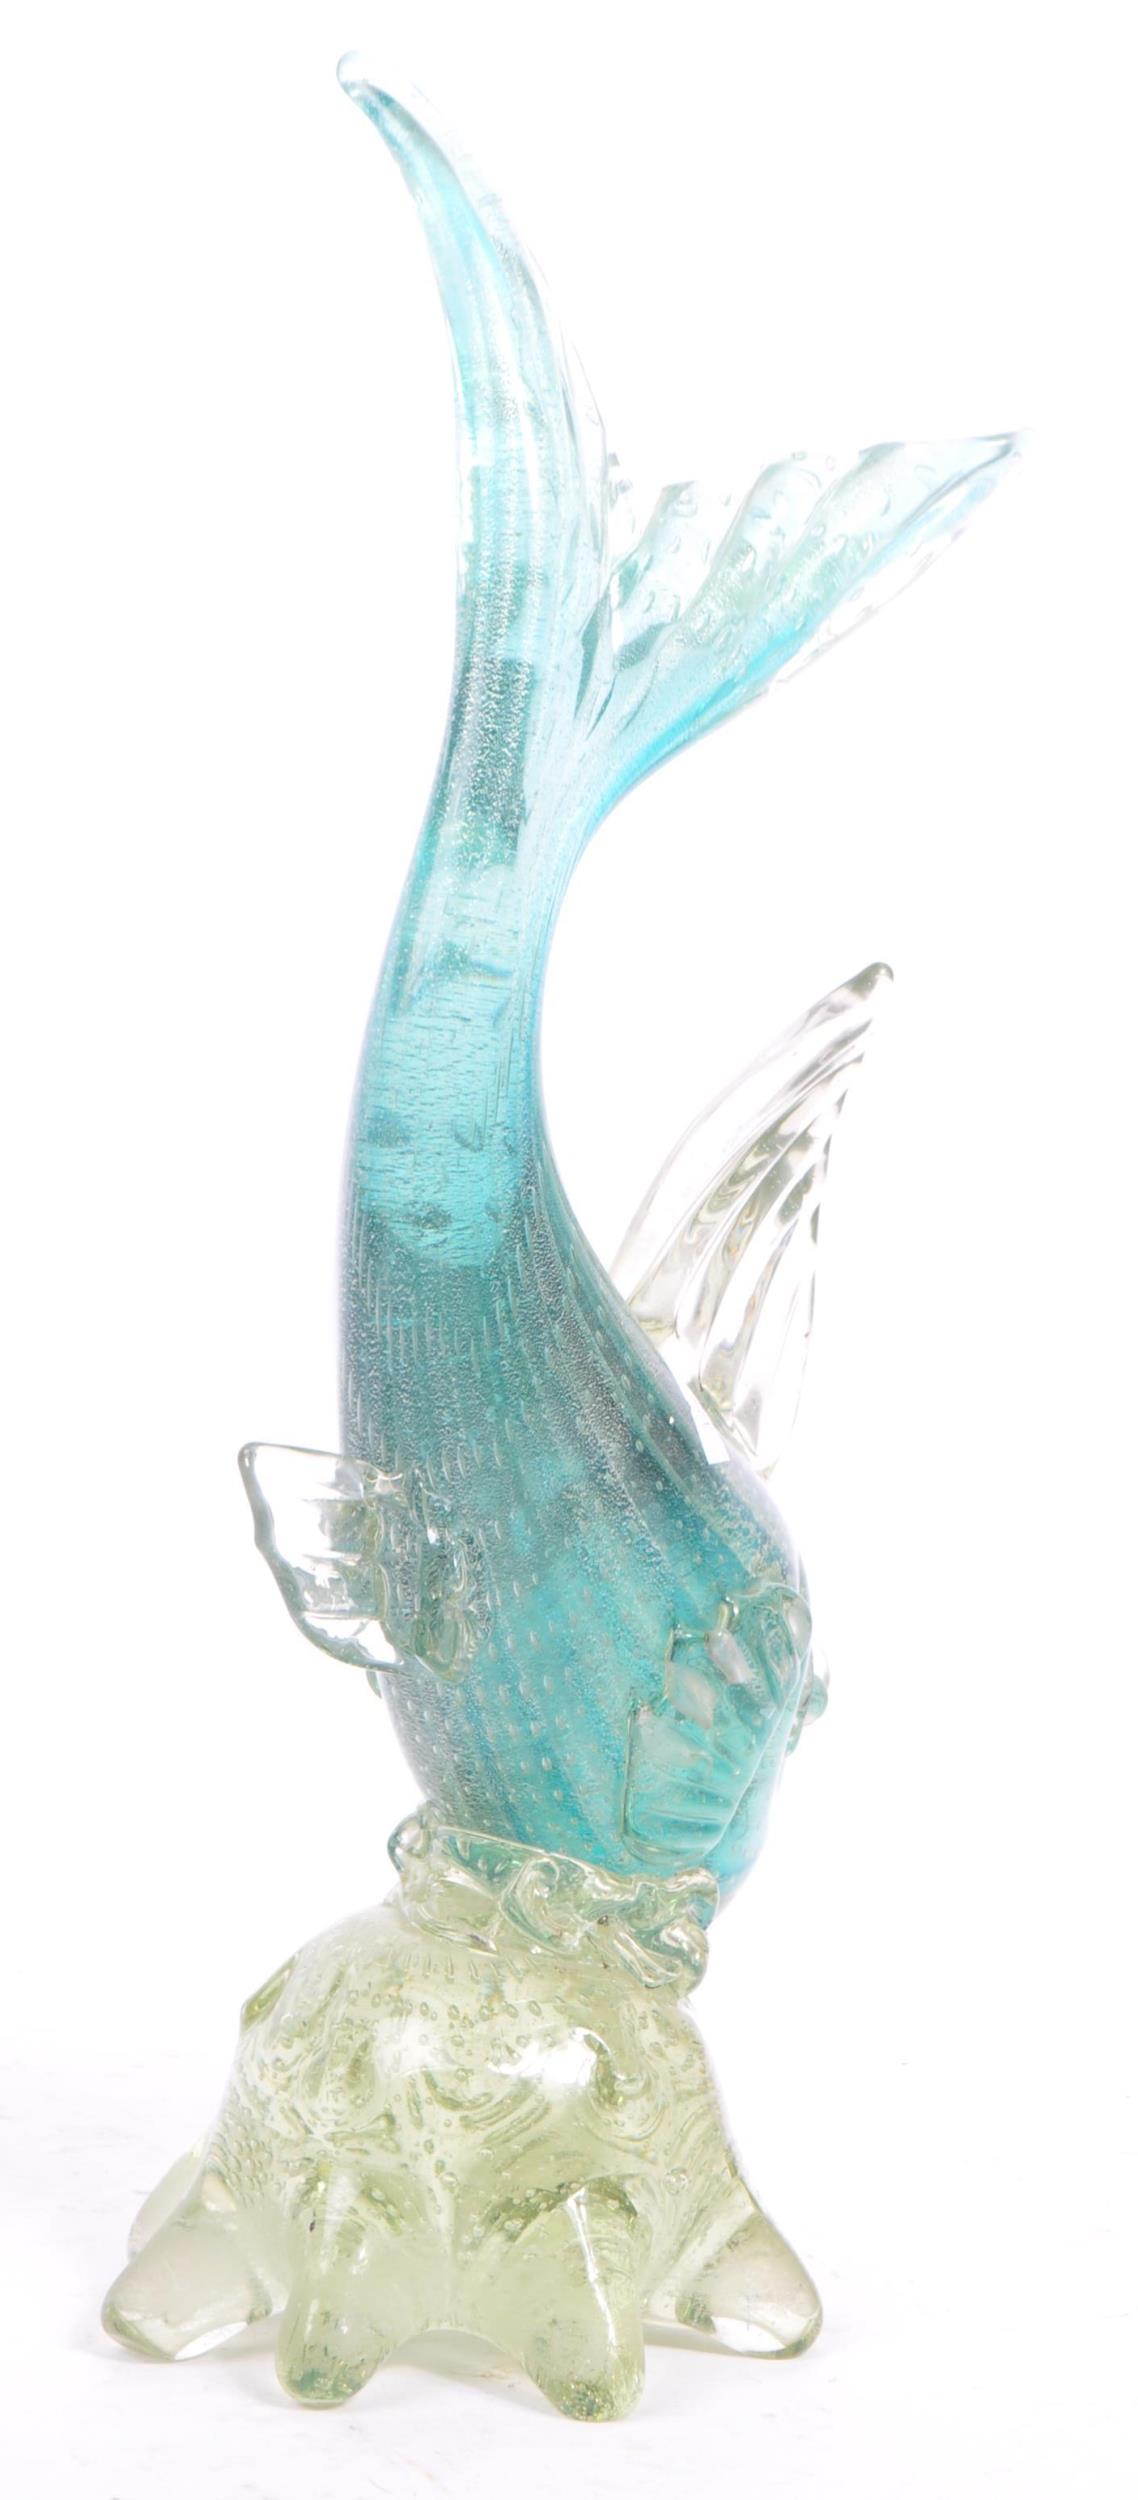 MURANO - MID 20TH CENTURY STUDIO GLASS FISH - Image 4 of 8